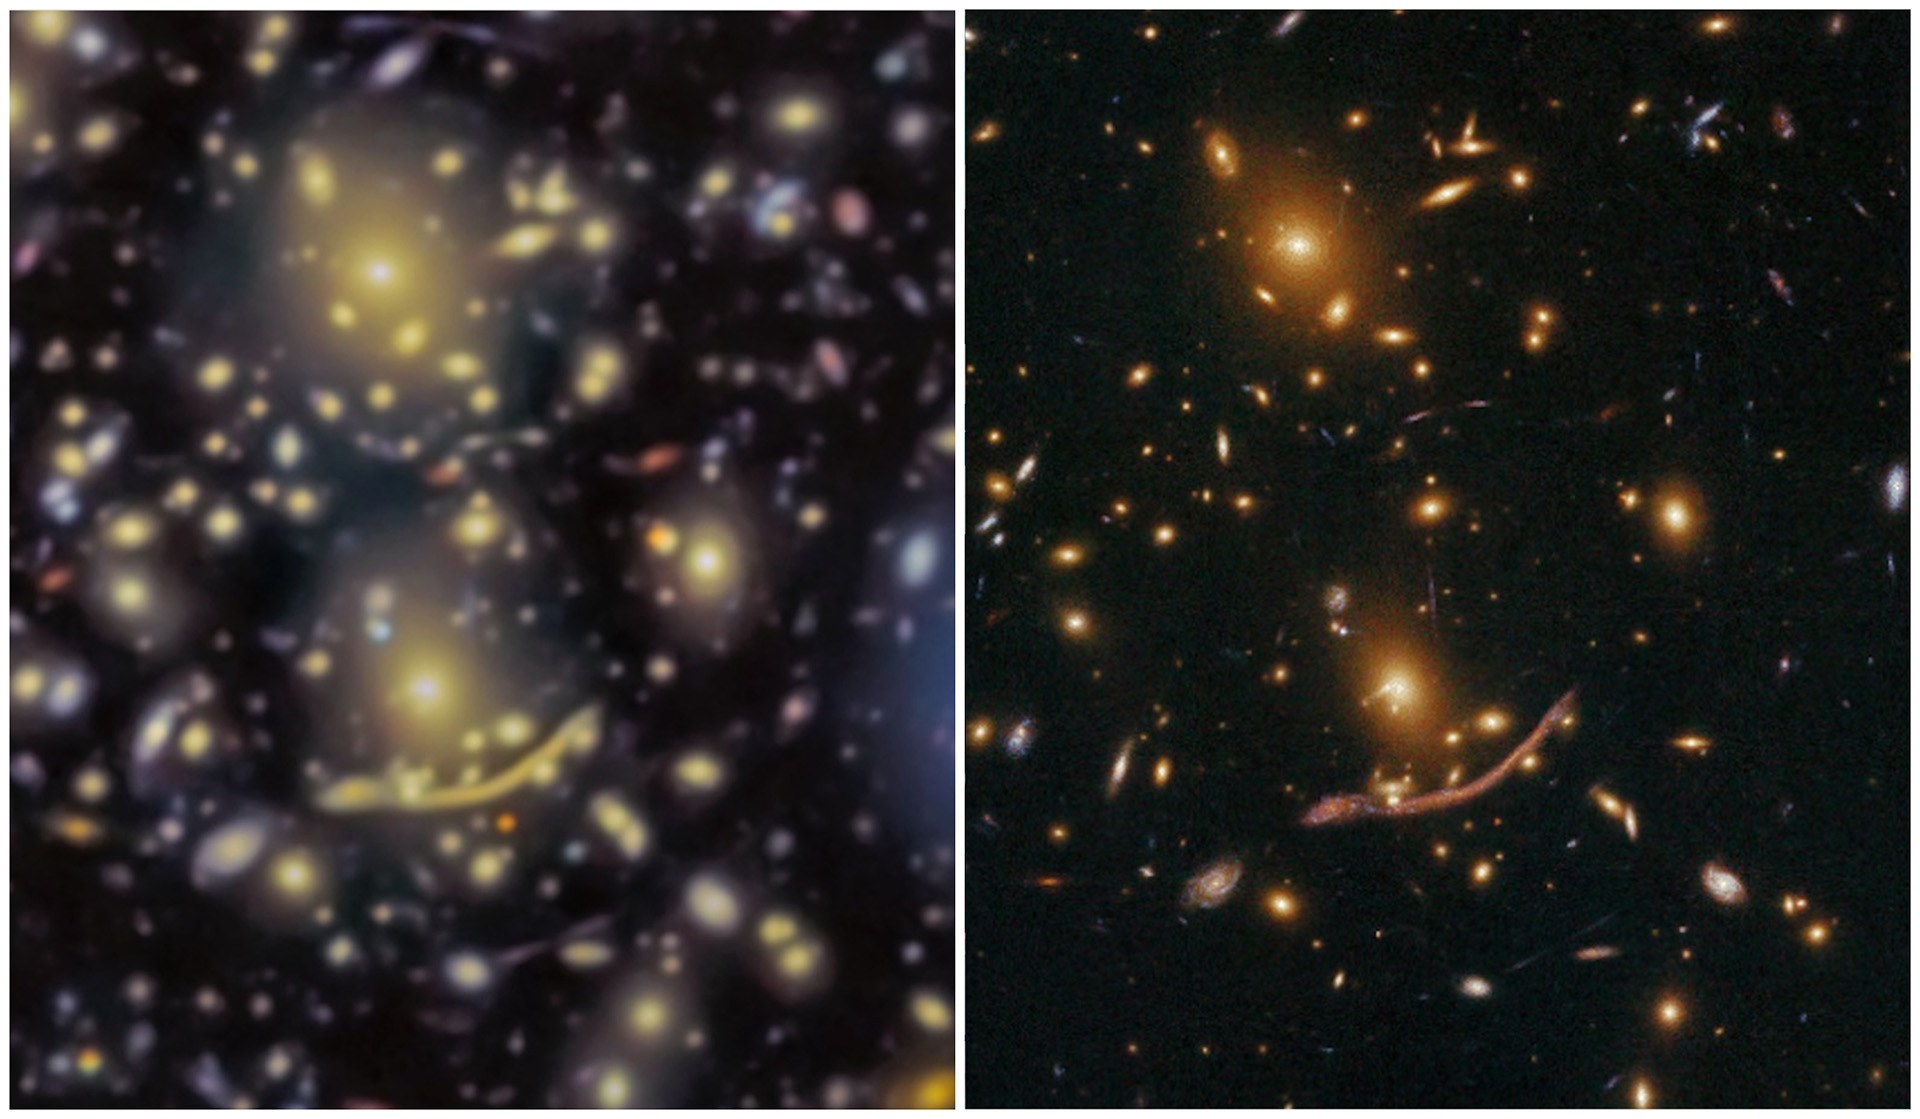 Esta imagen compara el centro del cúmulo visto por GTC (izquierda) y por Hubble (derecha). Los datos de Hubble tienen mejor resolución espacial debido a que no están afectados por las turbulencias de la atmósfera. Los datos de GTC son incluso más profundos, revelando la existencia de algunas galaxias hasta ahora desconocidas y no detectadas por Hubble. Crédito: GRANTECAN/HST.